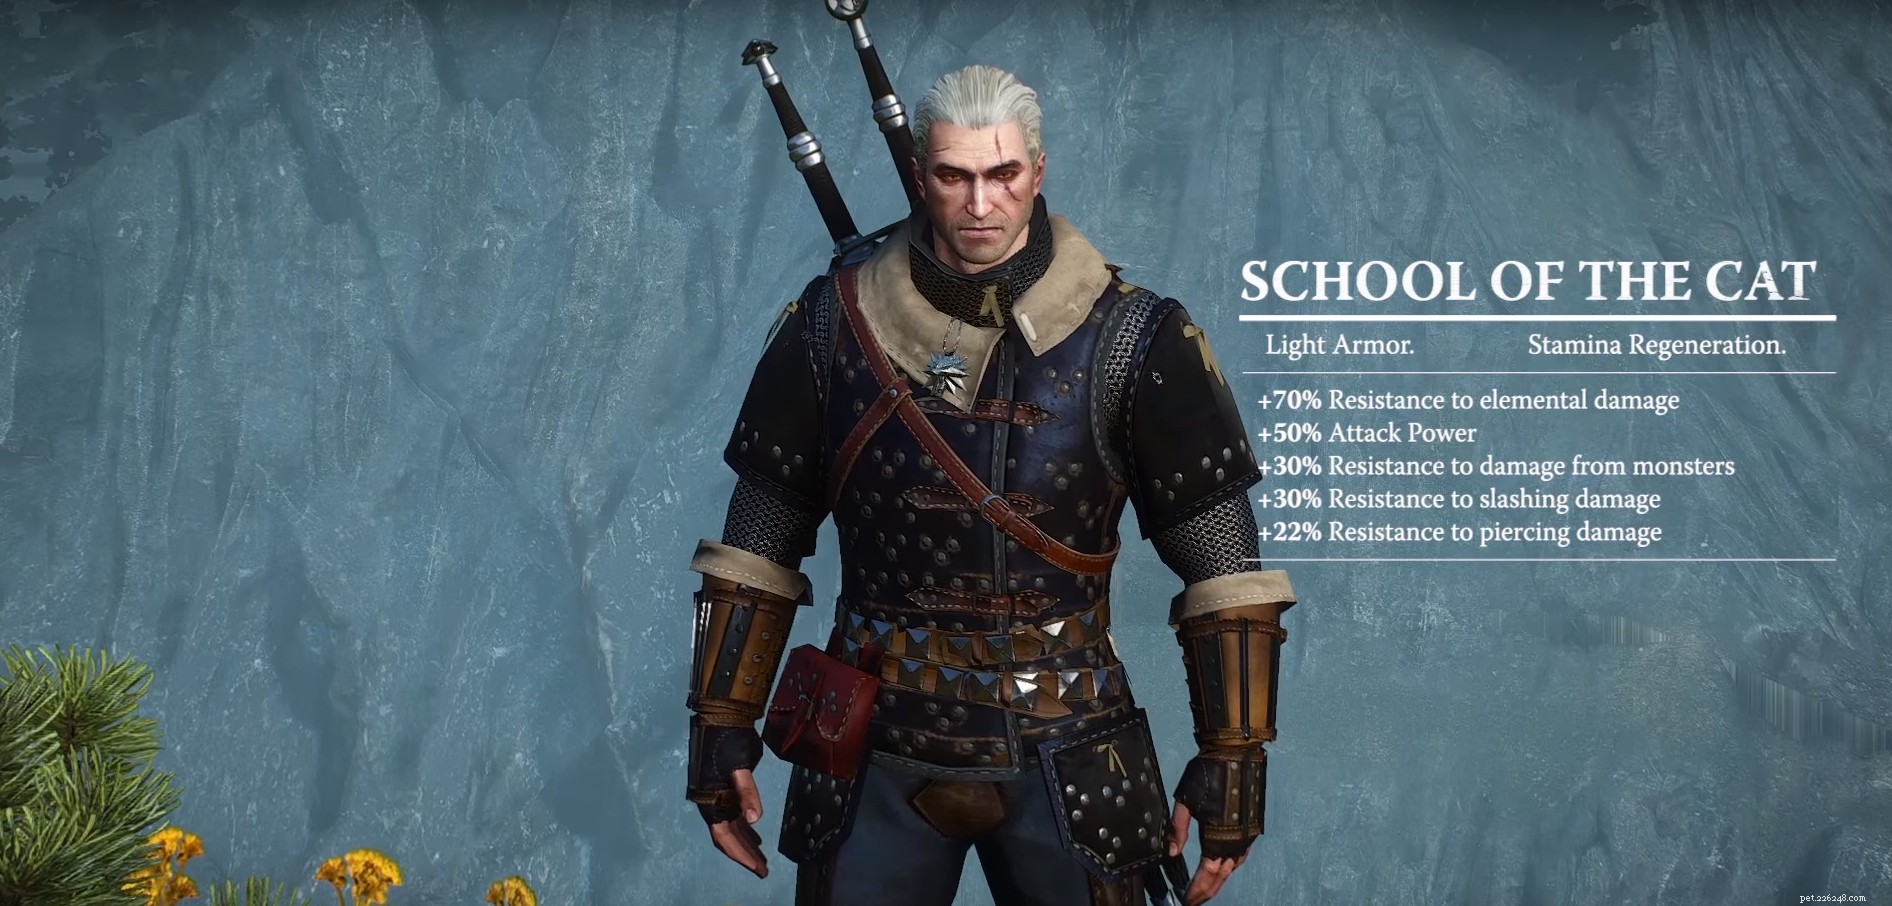 Witcher 3 Cat School Gear:het zeer populaire spel